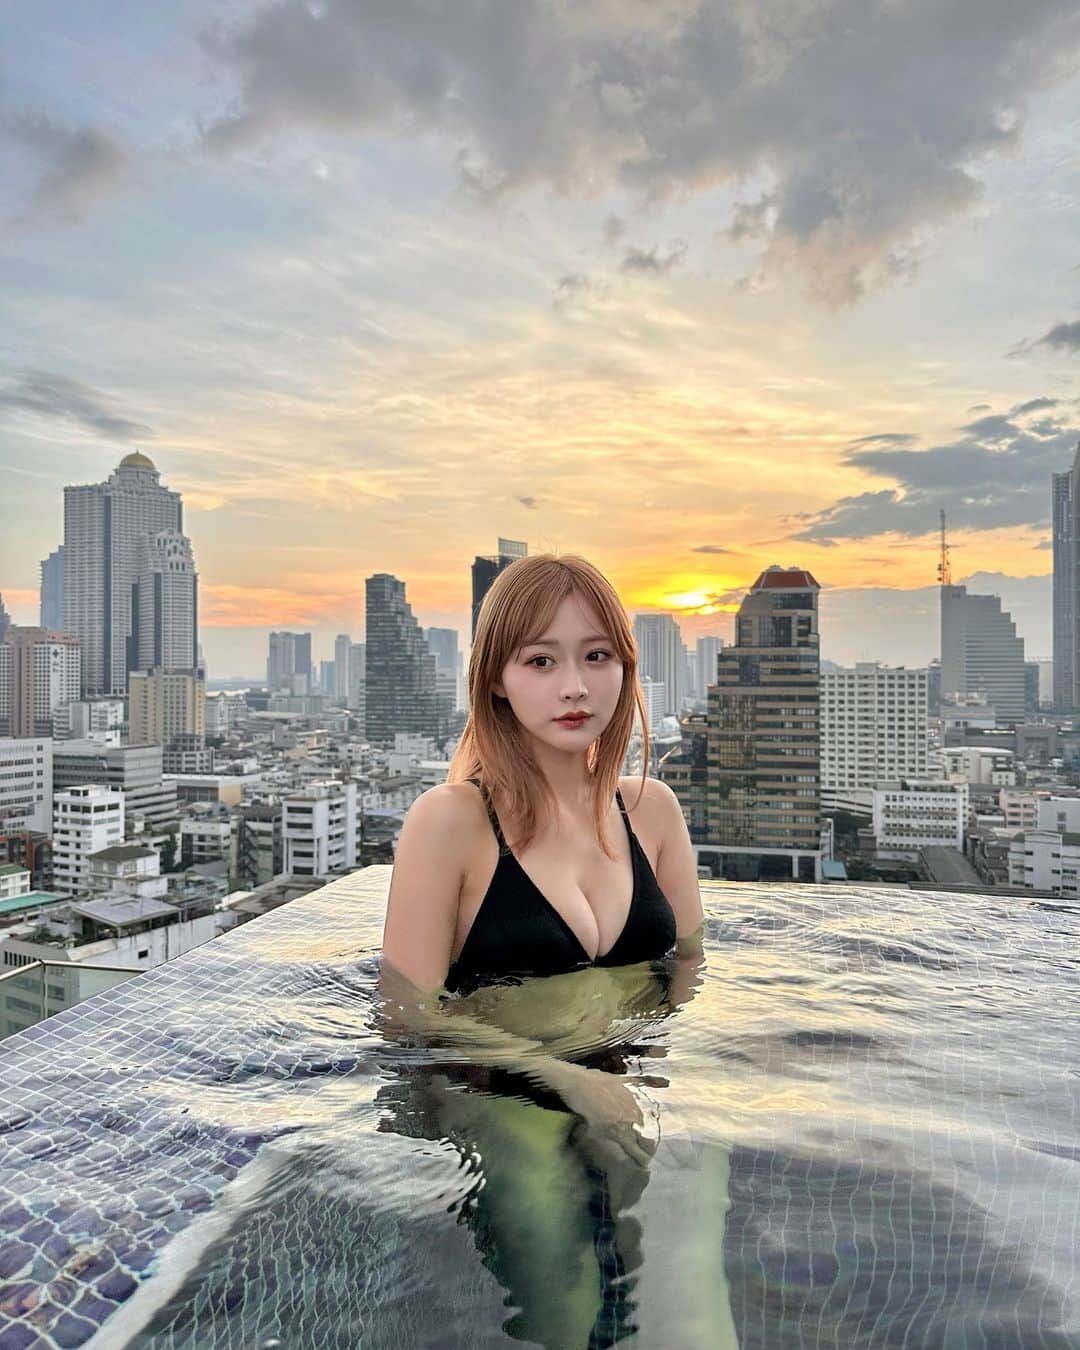 森下愛里沙(もりしたありさ) のインスタグラム：「ㅤㅤㅤㅤㅤㅤㅤㅤㅤㅤㅤㅤㅤ ㅤㅤㅤㅤㅤㅤㅤㅤㅤㅤㅤㅤㅤ ㅤㅤㅤㅤㅤㅤㅤㅤㅤㅤㅤㅤㅤ バンコクで泊まったホテルのプール お部屋からもプールの景色が見れるんだぁ めちゃくちゃ綺麗でずっとここに居たかった。 ㅤㅤㅤㅤㅤㅤㅤㅤㅤㅤㅤㅤㅤㅤㅤㅤㅤㅤㅤㅤㅤㅤㅤㅤㅤㅤ ㅤㅤㅤㅤㅤㅤㅤㅤㅤㅤㅤㅤㅤ 今回泊まったホテルは @marriottsurawongse  ㅤㅤㅤㅤㅤㅤㅤㅤㅤㅤㅤㅤㅤ ㅤㅤㅤㅤㅤㅤㅤㅤㅤㅤㅤㅤㅤ 水着👙 @shein_japan  ㅤㅤㅤㅤㅤㅤㅤㅤㅤㅤㅤㅤㅤ  試すたび、好きが見つかる。届くたび、好きが増えてく。 がキャッチフレーズでSHEINは本当にアイテムを頼むたびにどんどん好きが増えていくよね🥰 ㅤㅤㅤㅤㅤㅤㅤㅤㅤㅤㅤㅤㅤ ㅤㅤㅤㅤㅤㅤㅤㅤㅤㅤㅤㅤㅤ 11月27日までBLACK FRIDAYセールが行われていて、SHEIN30万点以上の人気アイテムが限定値下げされてて最大90パーセントOFFのアイテムもあるの🫶🏻 ㅤㅤㅤㅤㅤㅤㅤㅤㅤㅤㅤㅤㅤ クーポンコード▶『23BF24』 ※0-5999円で15%オフ,6000円 以上のご購入で20%オフ 利用期限:2023年11月10日~2023年12月31日 ※SHEIN アカウント1つにつき 3回までクーポン利用できます⭐️ ㅤㅤㅤㅤㅤㅤㅤㅤㅤㅤㅤㅤㅤ ㅤㅤㅤㅤㅤㅤㅤㅤㅤㅤㅤㅤㅤ ㅤㅤㅤㅤㅤㅤㅤㅤㅤㅤㅤㅤㅤ  #SHEINblackfriday #ad #loveshein #SHEINGoodFinds #SHEIN購入品 #BeSHEINモデル #SHEINforAll  #saveinstyle #海外旅行 #バンコク旅行 #バンコク #タイ #タイ旅行 #バンコクマリオットホテルザスリウォン #ホテルプール #水着 #ハイトーン #ハイトーンカラー #bangkokmarriotthotelthesurawongse」